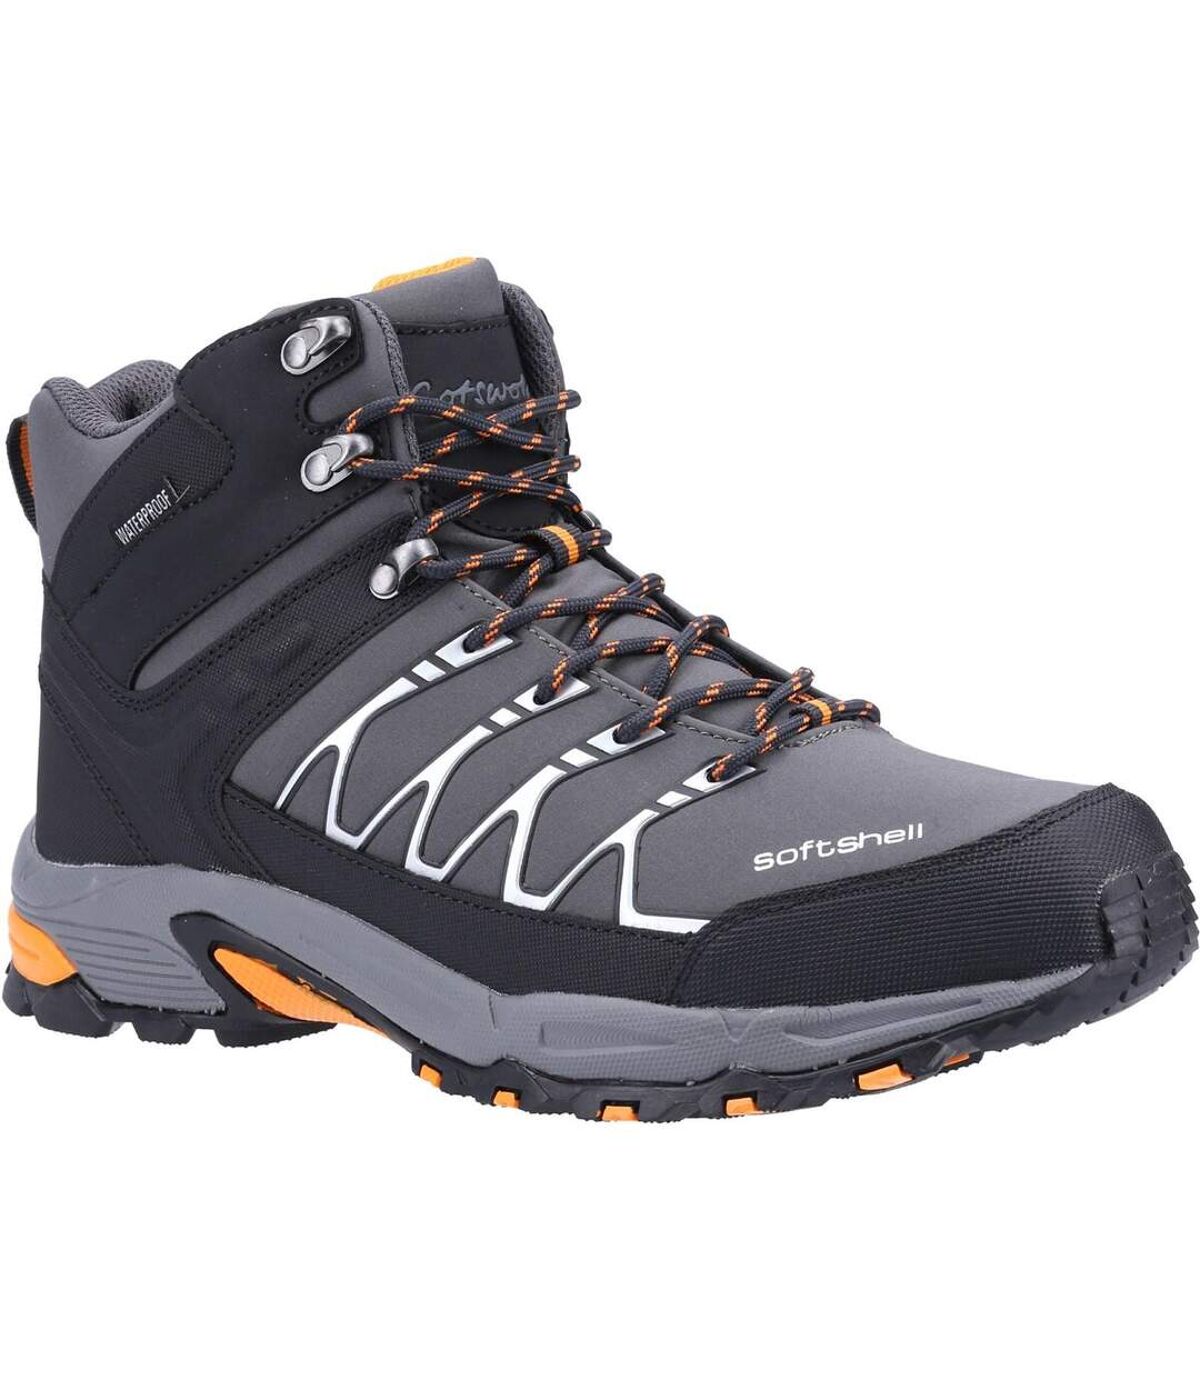 Cotswold - Chaussures de randonnée - Hommes (Gris / orange) - UTFS5225